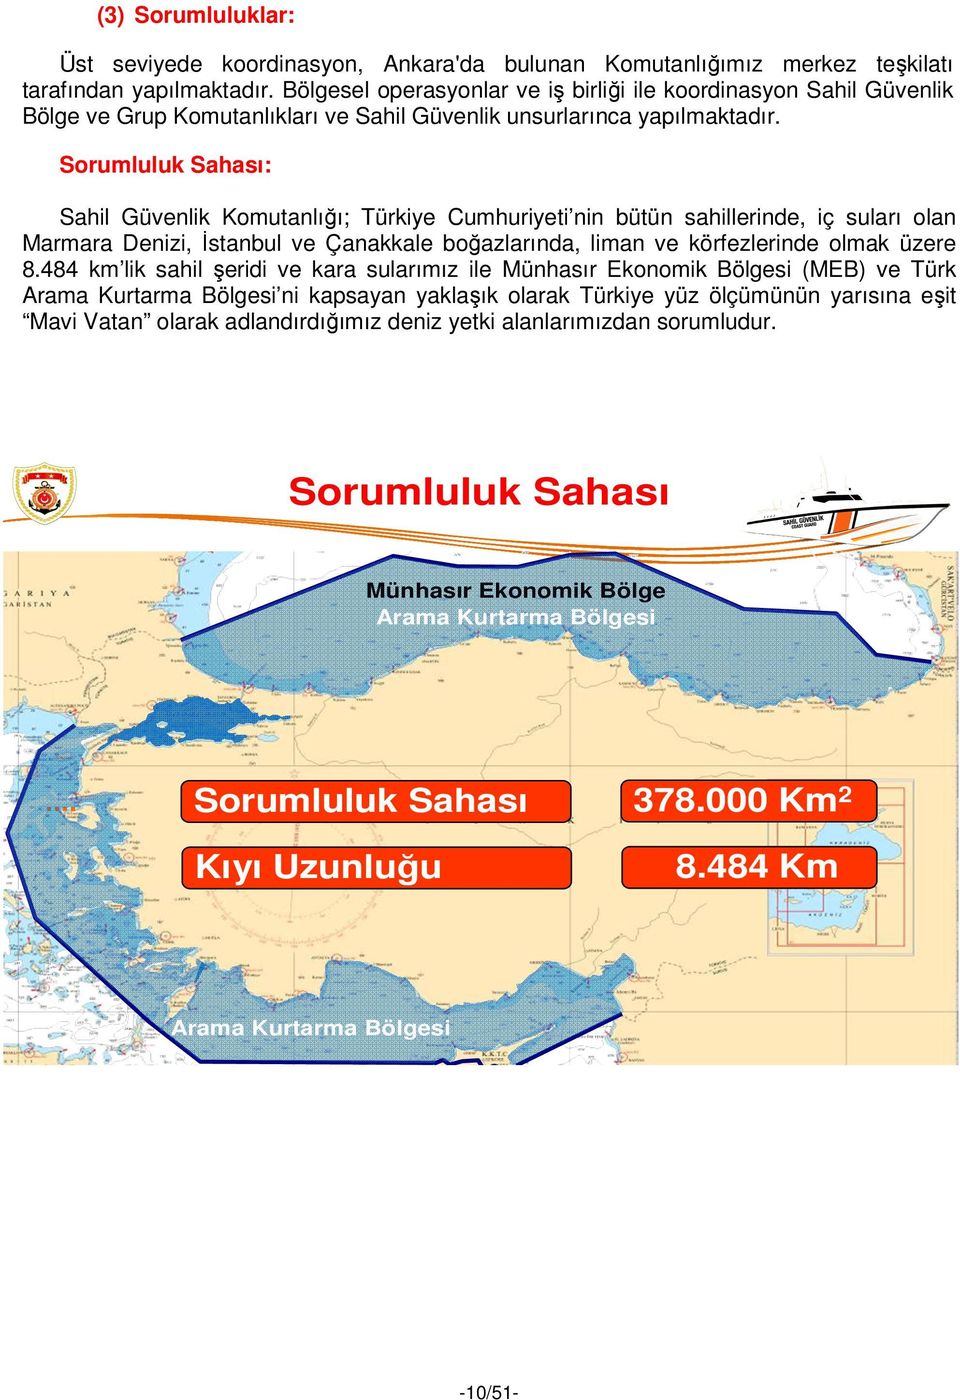 Sorumluluk Sahası: Sahil Güvenlik Komutanlığı; Türkiye Cumhuriyeti nin bütün sahillerinde, iç suları olan Marmara Denizi, İstanbul ve Çanakkale boğazlarında, liman ve körfezlerinde olmak üzere 8.